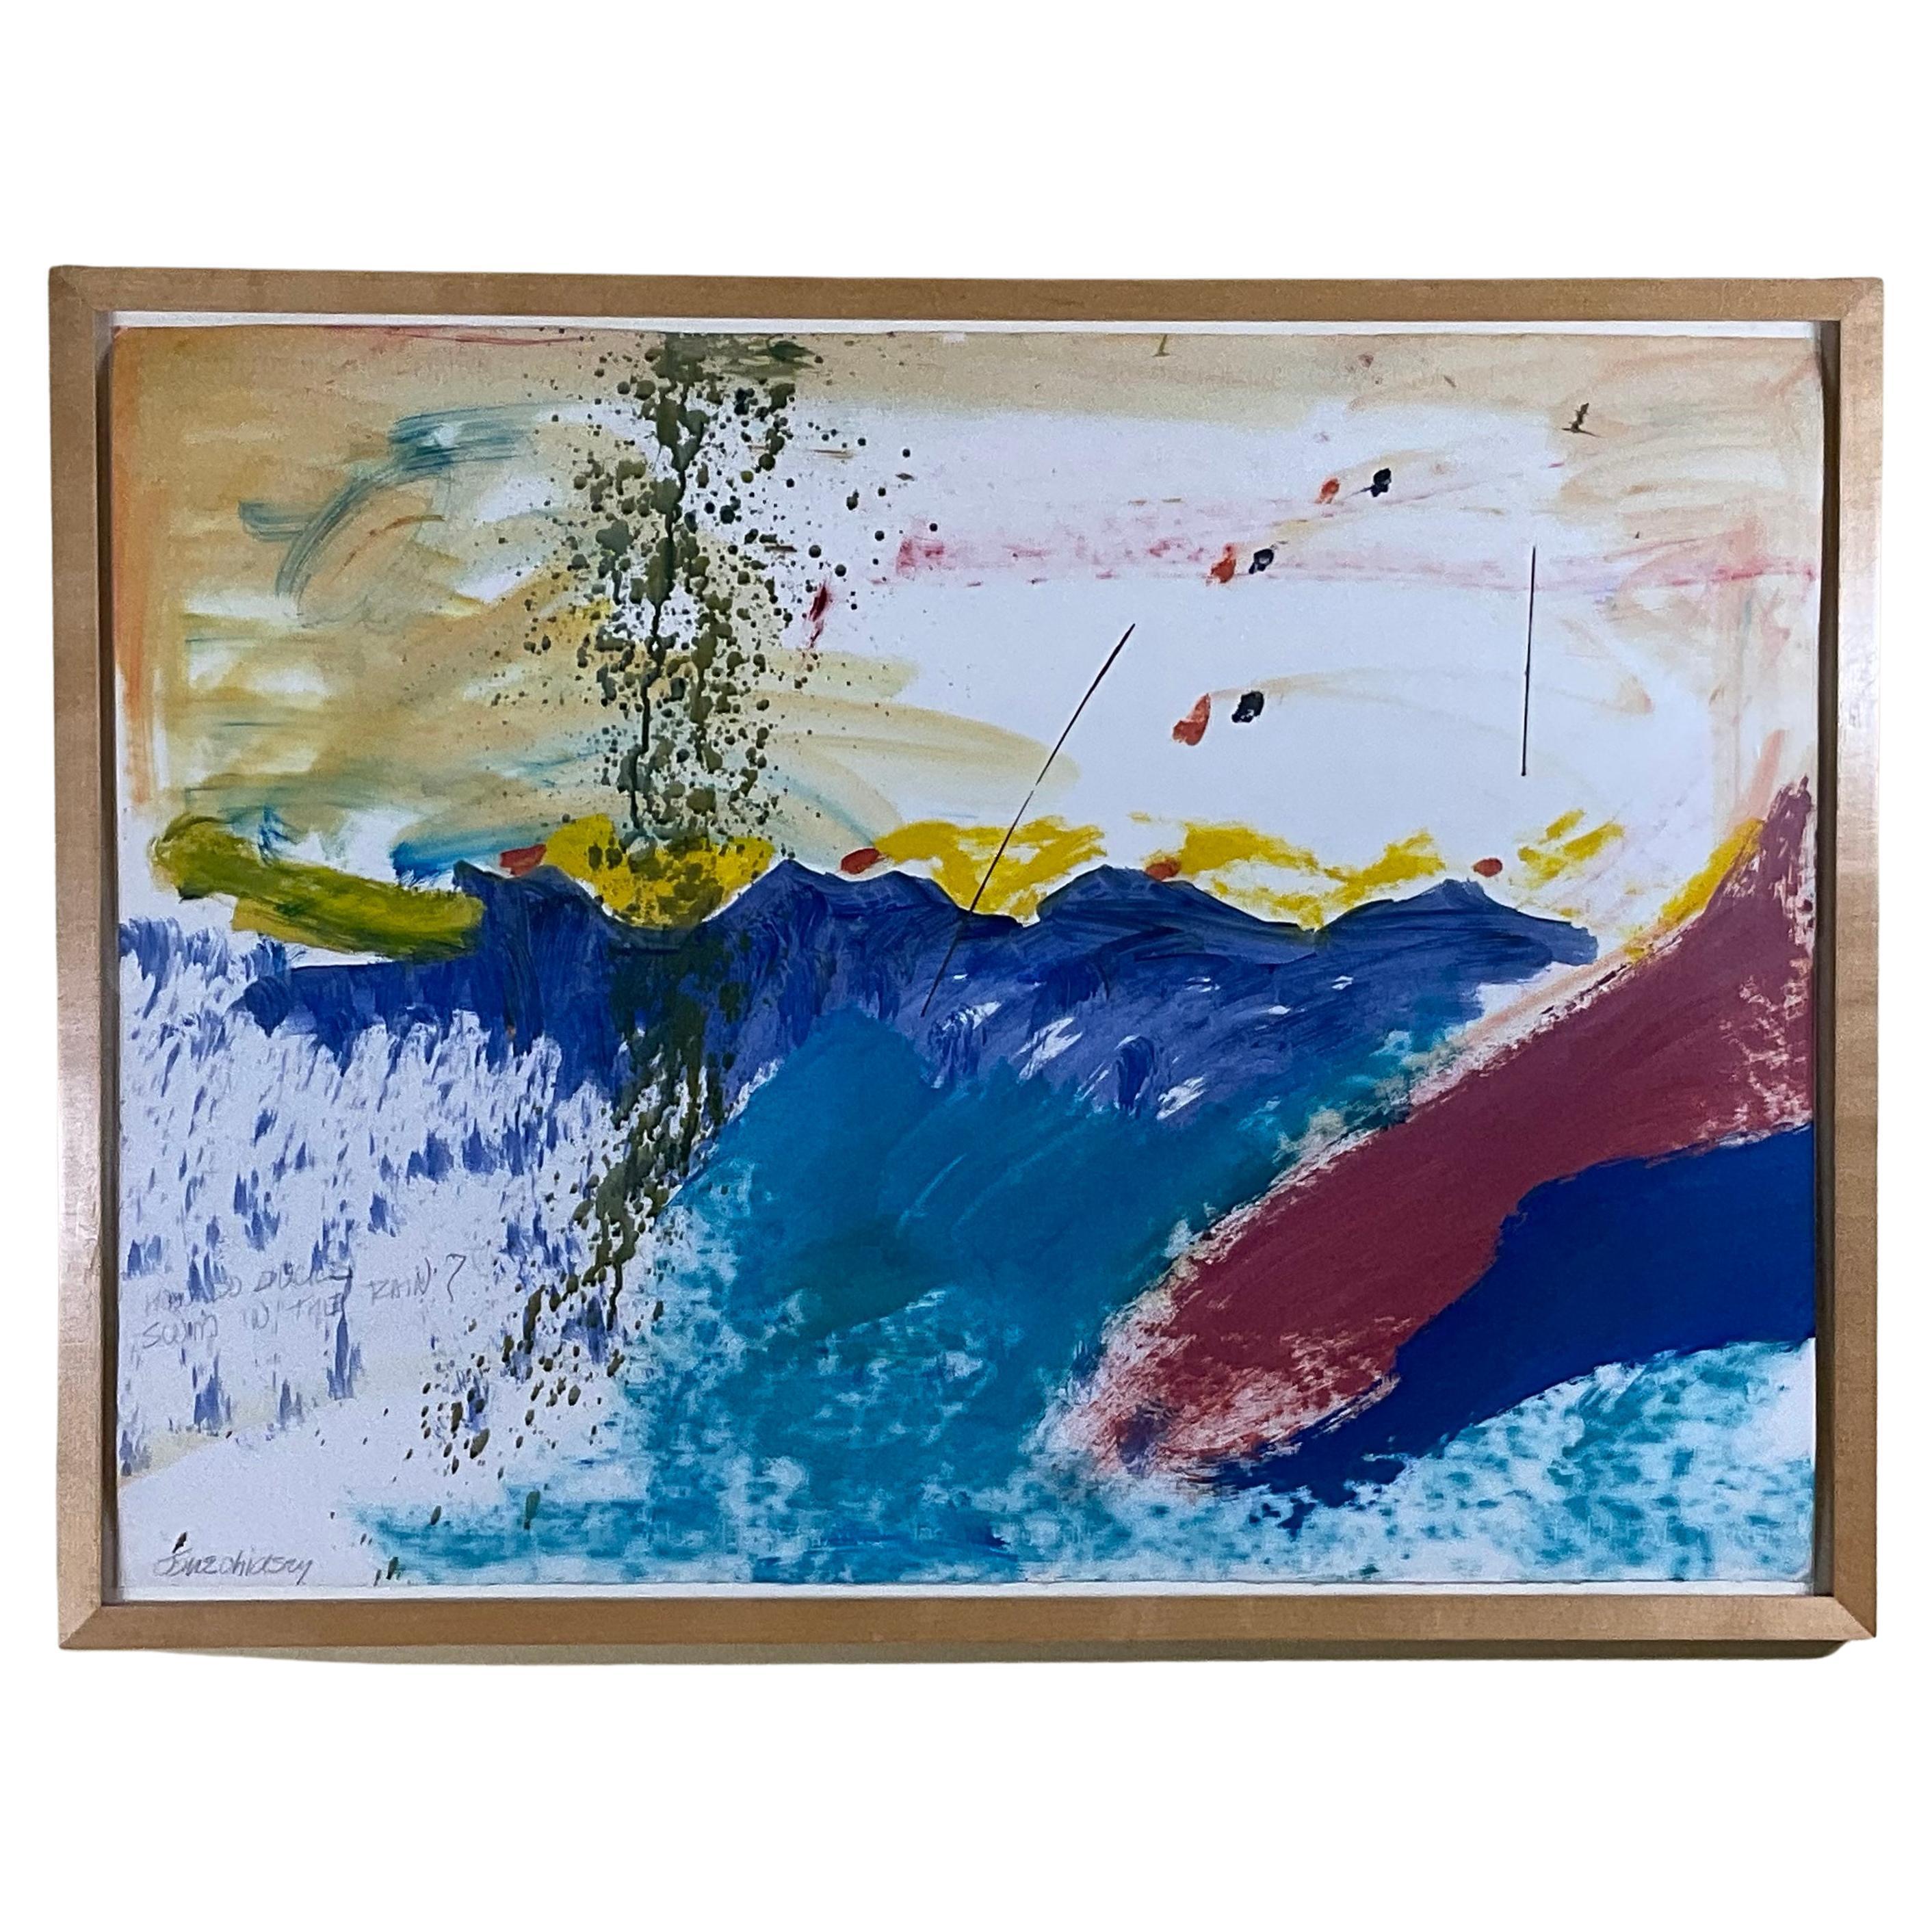 Peinture de Jane Chidsey représentant des canards nageant sur l'eau 